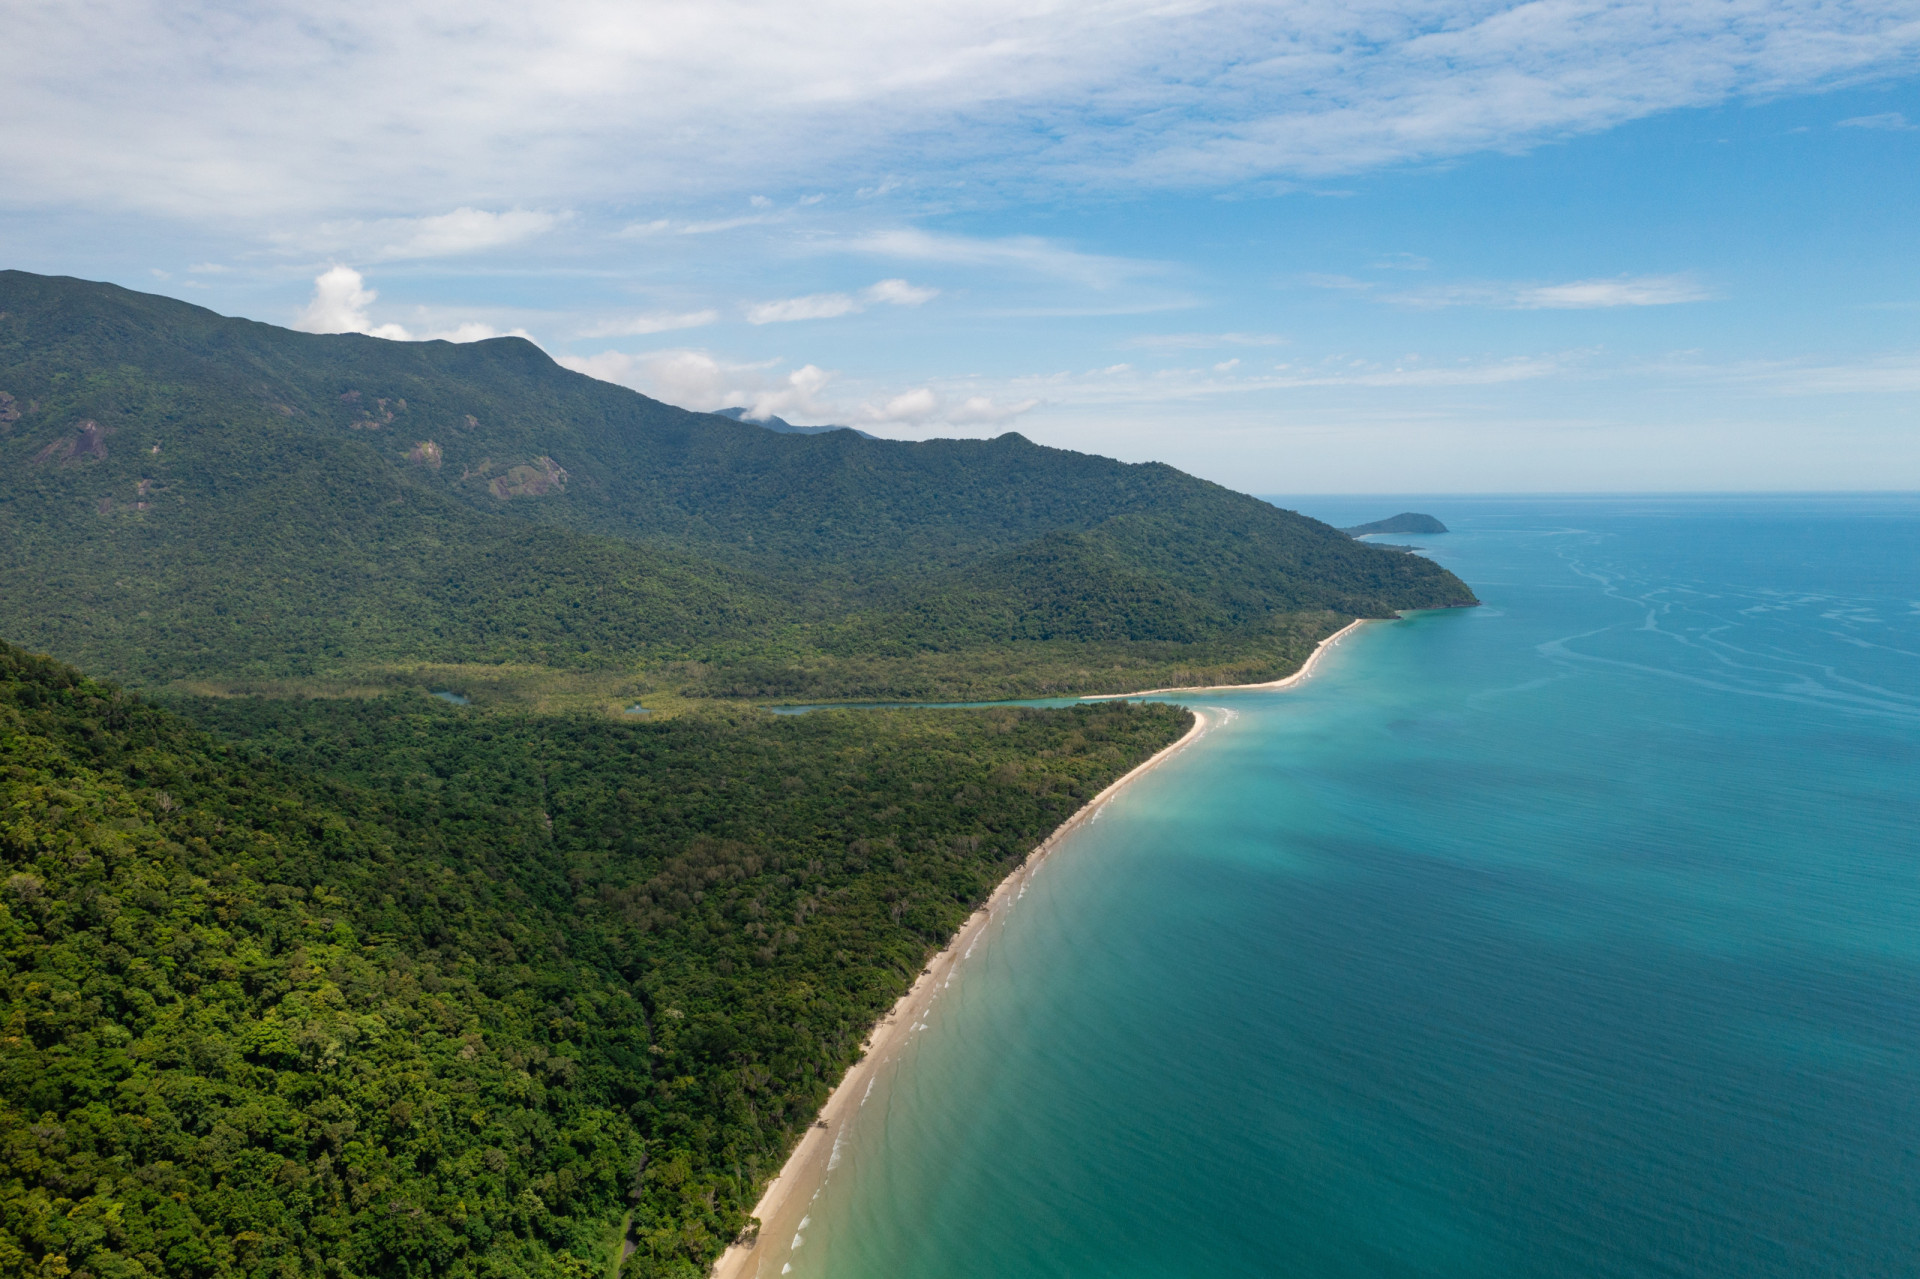 <p>La forêt tropicale de Daintree, située sur la côte nord-est du Queensland, en Australie, est la plus ancienne forêt tropicale de la planète. On estime qu'elle a environ 180 millions d'années, soit près de 10 millions d'années de plus que l'Amazonie en Amérique du Sud.</p><p><a href="https://www.msn.com/fr-fr/community/channel/vid-7xx8mnucu55yw63we9va2gwr7uihbxwc68fxqp25x6tg4ftibpra?cvid=94631541bc0f4f89bfd59158d696ad7e">Suivez-nous et accédez tous les jours à du contenu exclusif</a></p>